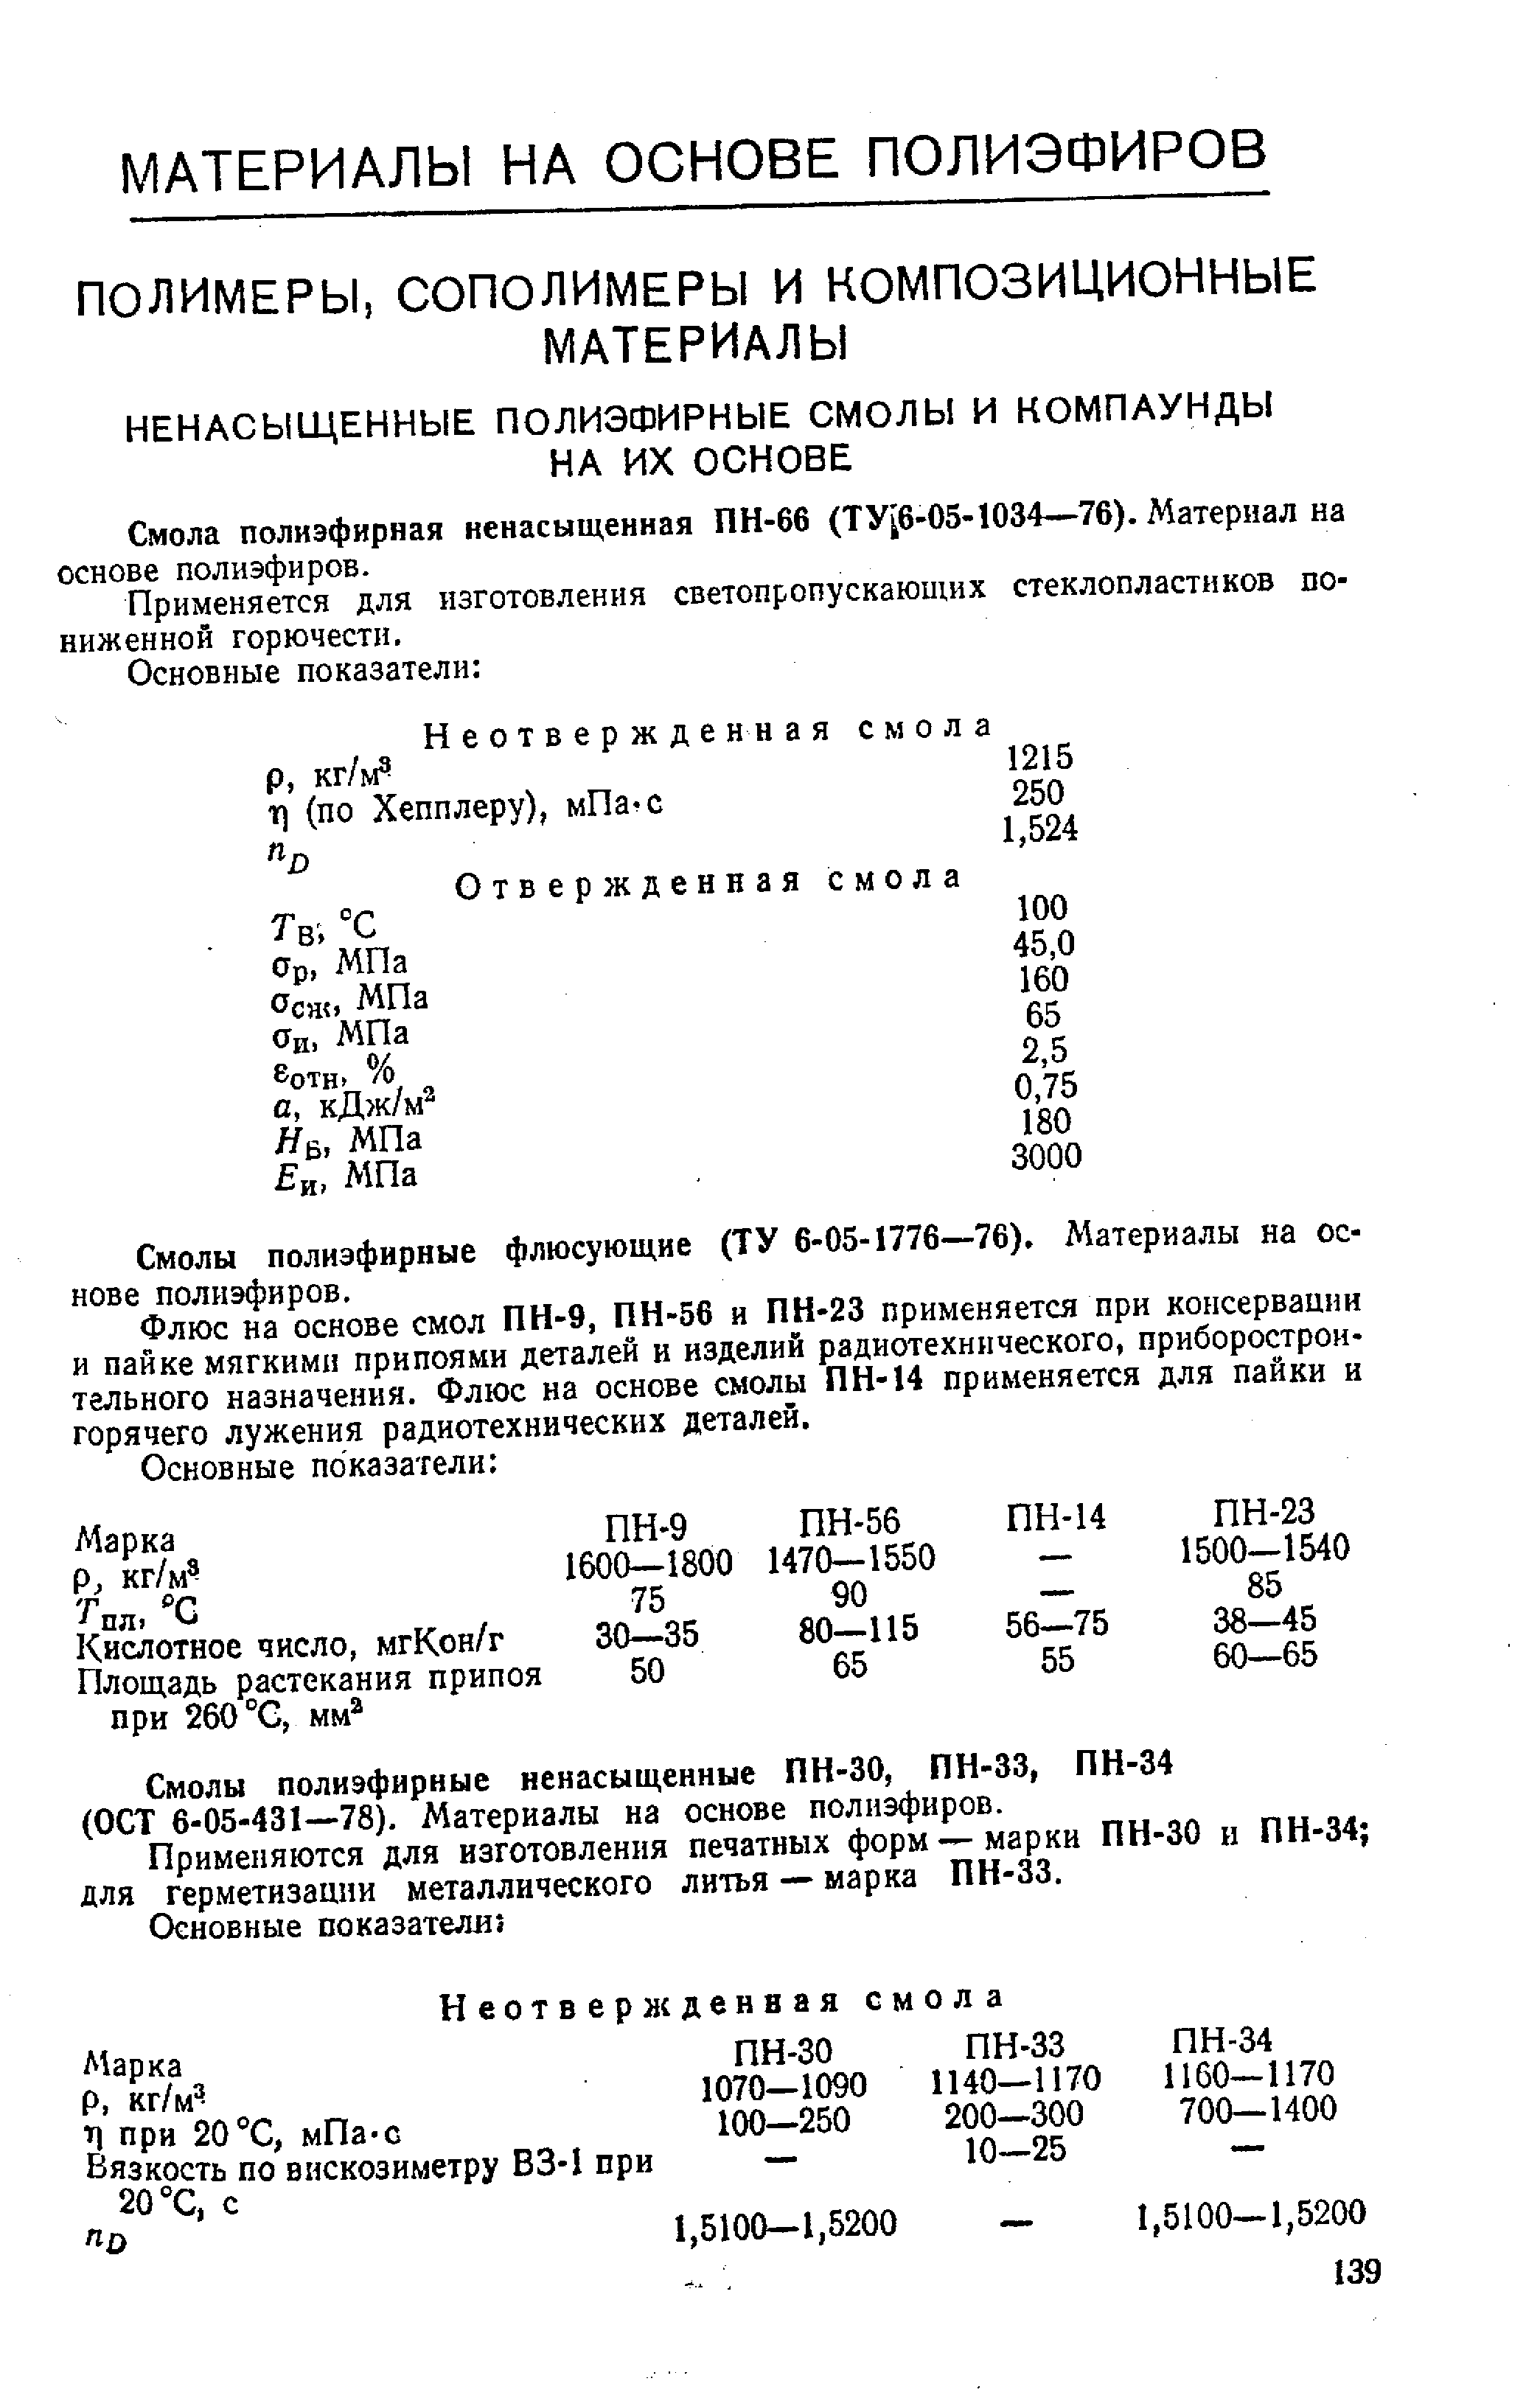 Смола полиэфирная ненасыщенная ПН-66 (ТУ 6-05-1034—76). Материал на основе полиэфиров.
